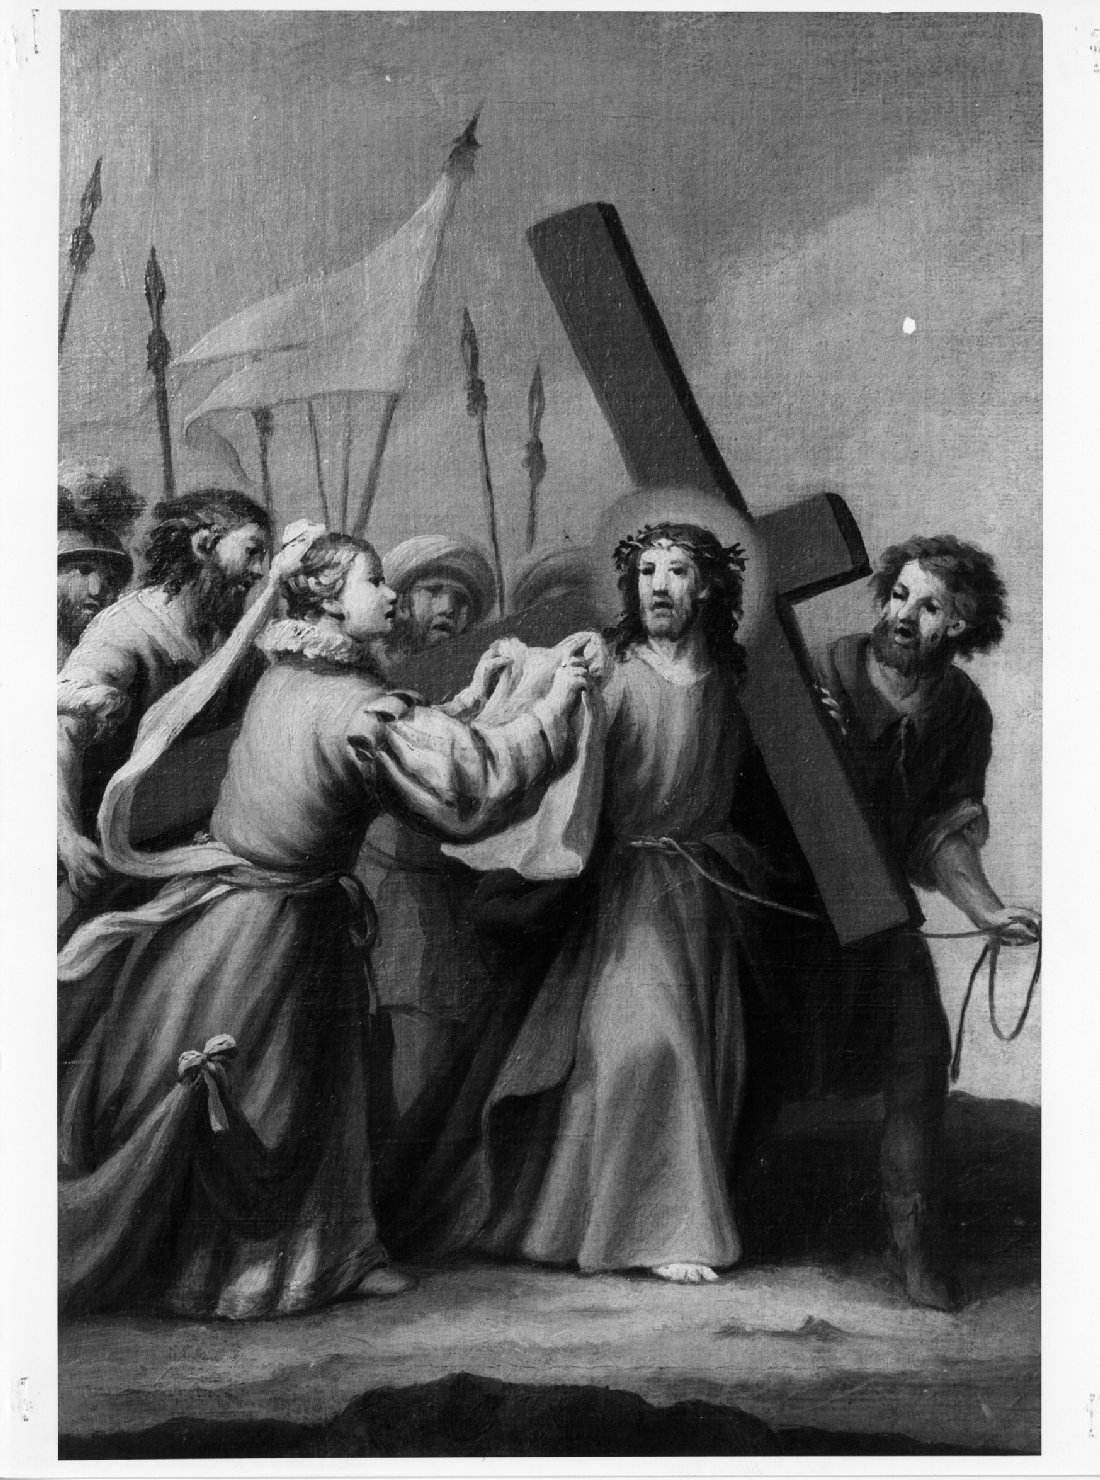 stazione VI: Gesù asciugato dalla Veronica (dipinto) - ambito veneto (sec. XIX)